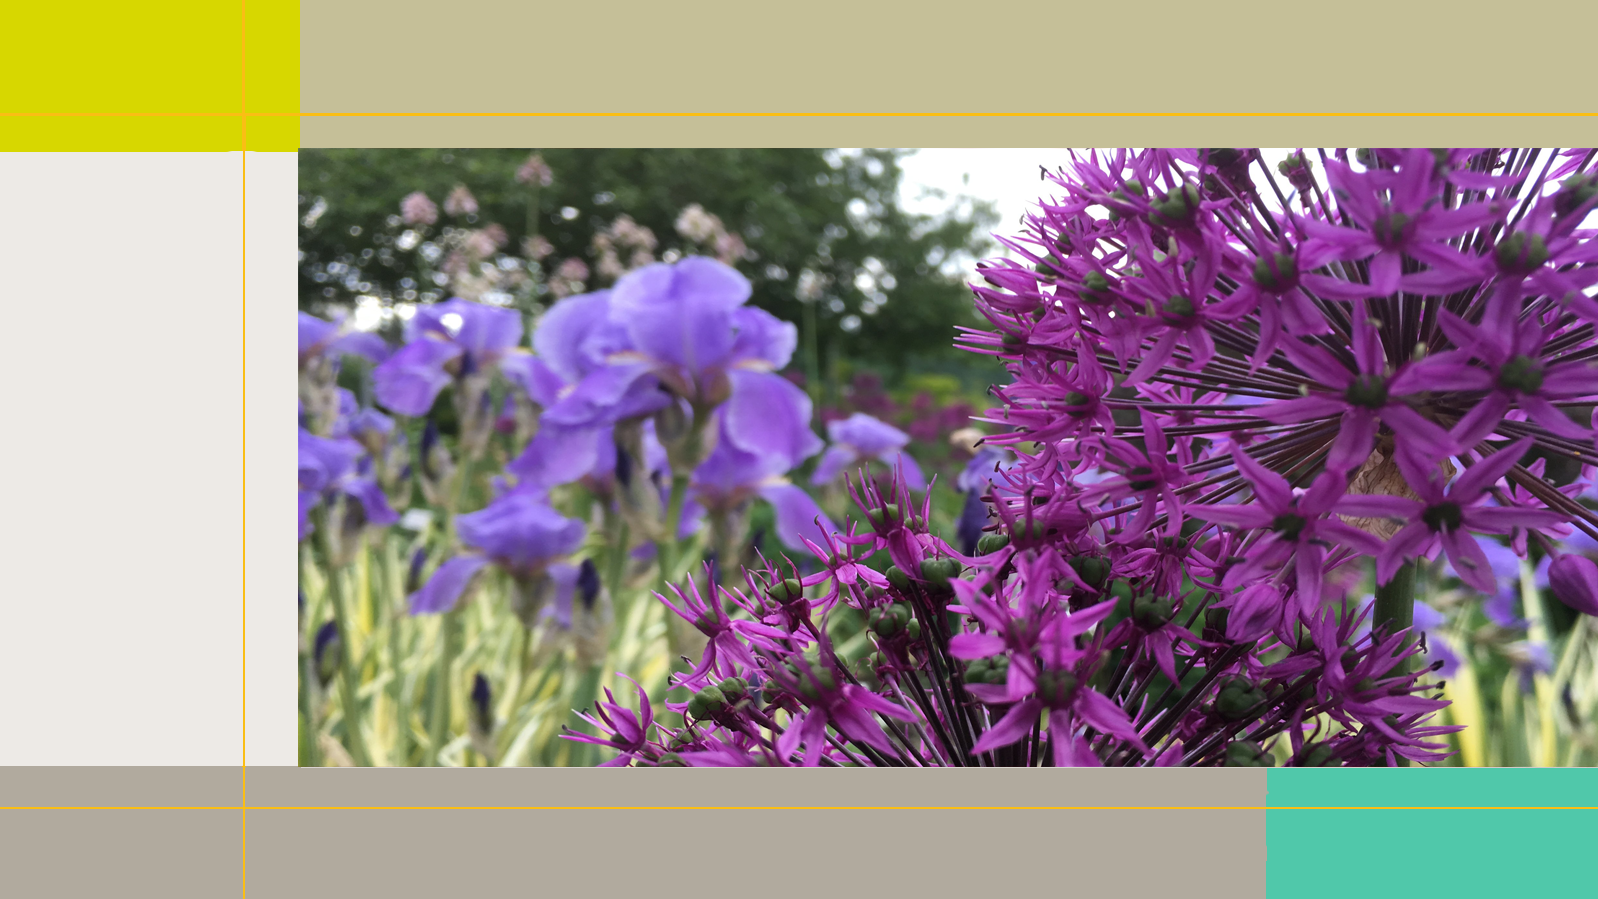 Das Bild zeigt im linken Hintergrund lila blühende Pflanzen und einen belaubten Baum. Im Vordergrund sind lilafarbene Blüten einer Distel zu sehen. 